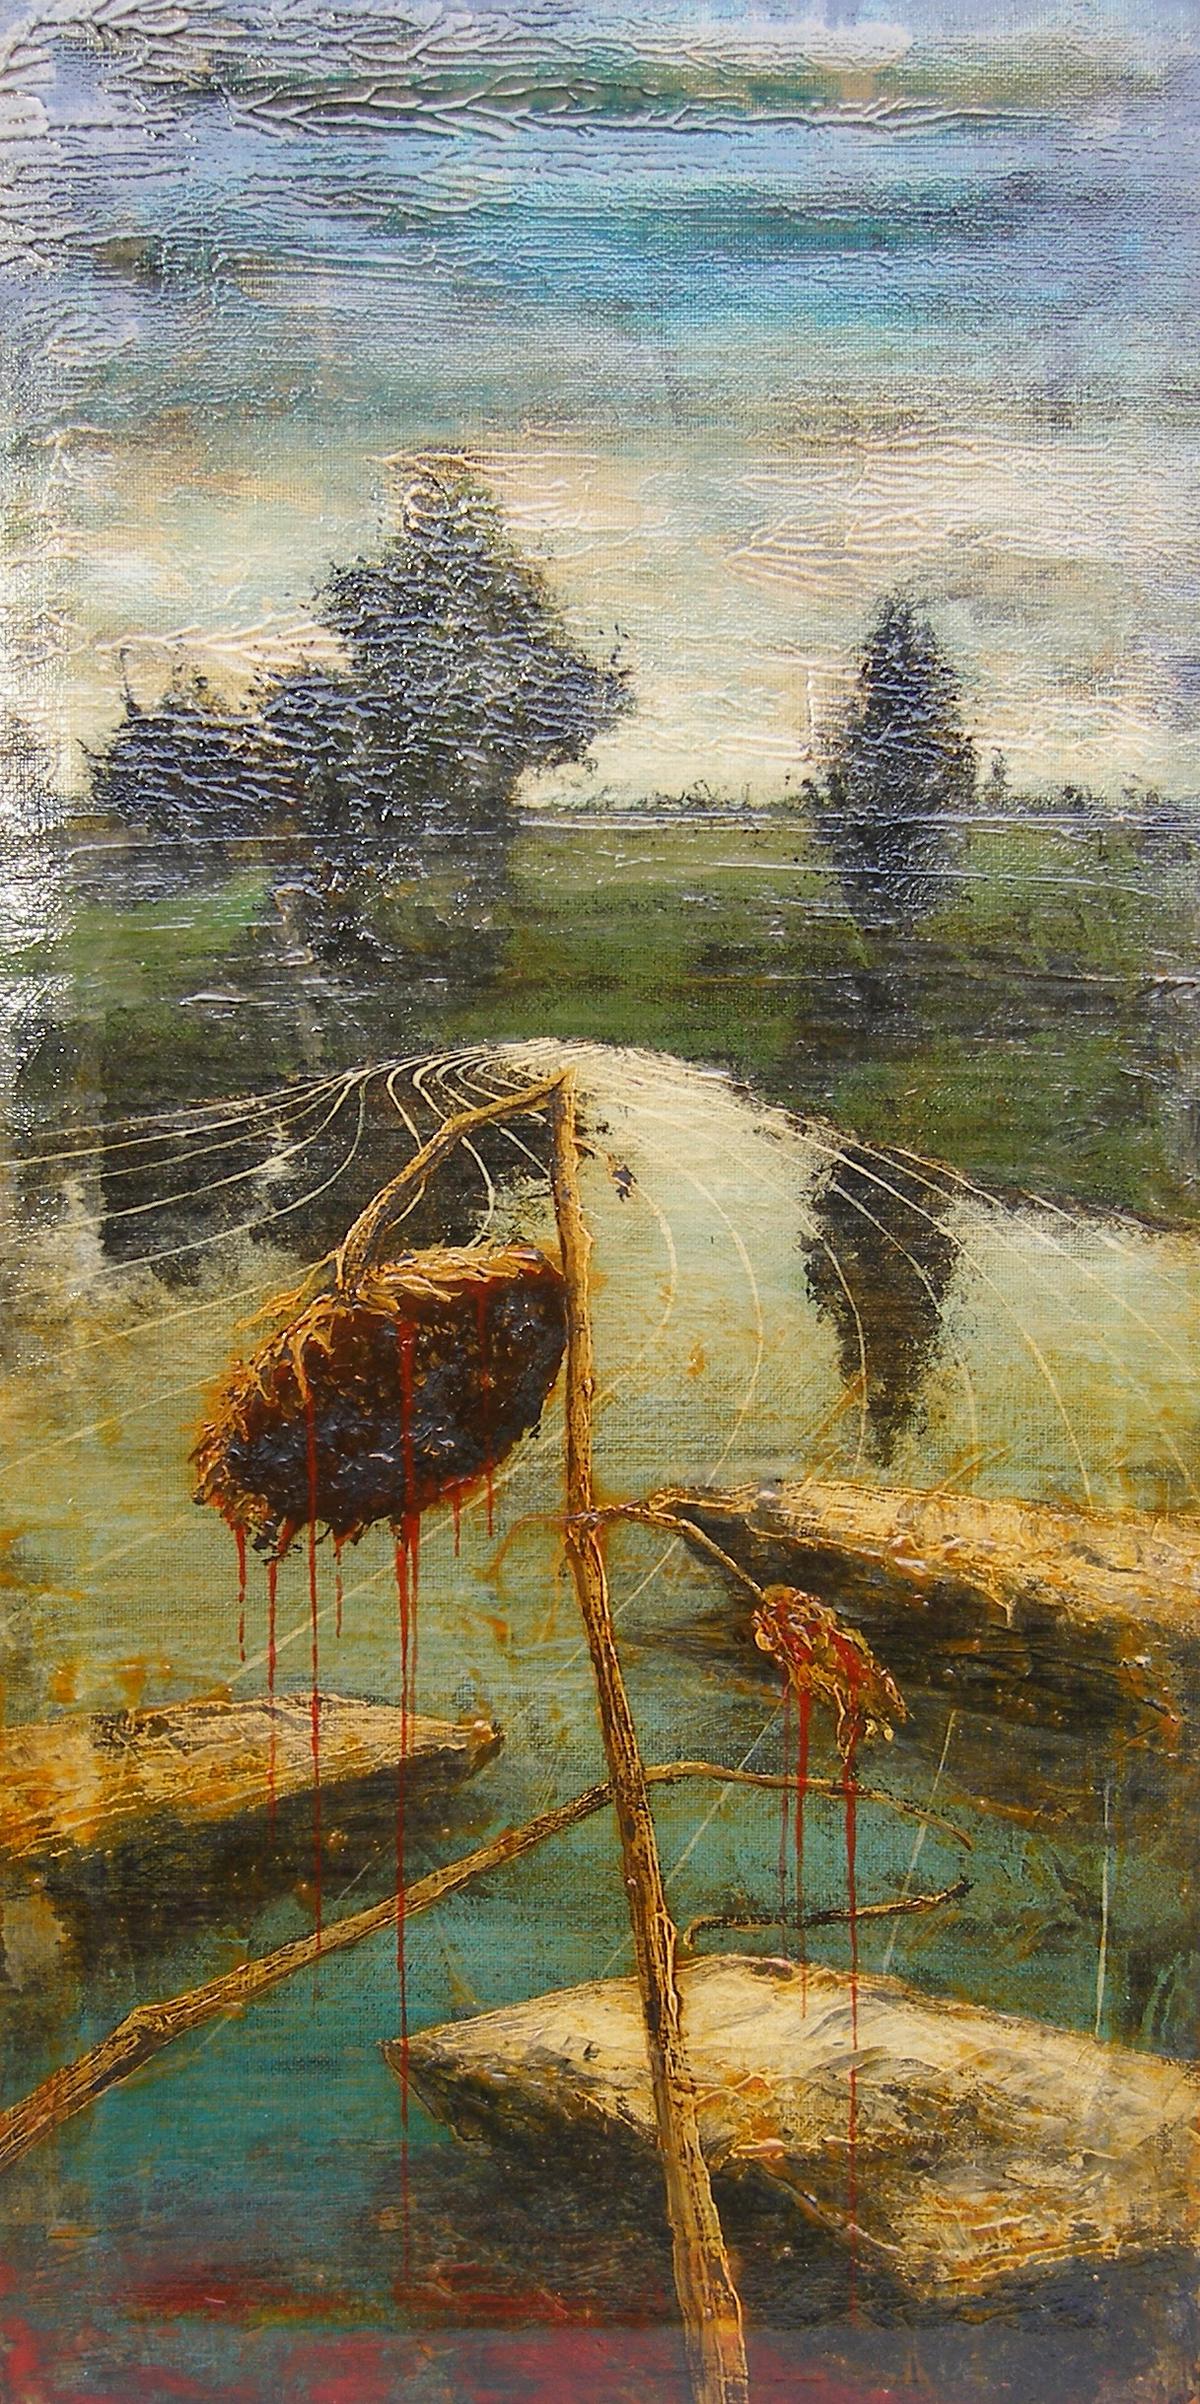 FORBICI JERNEJ, Serie Barred landscapes,2017, acrillico e olio su tela, 60x30cm